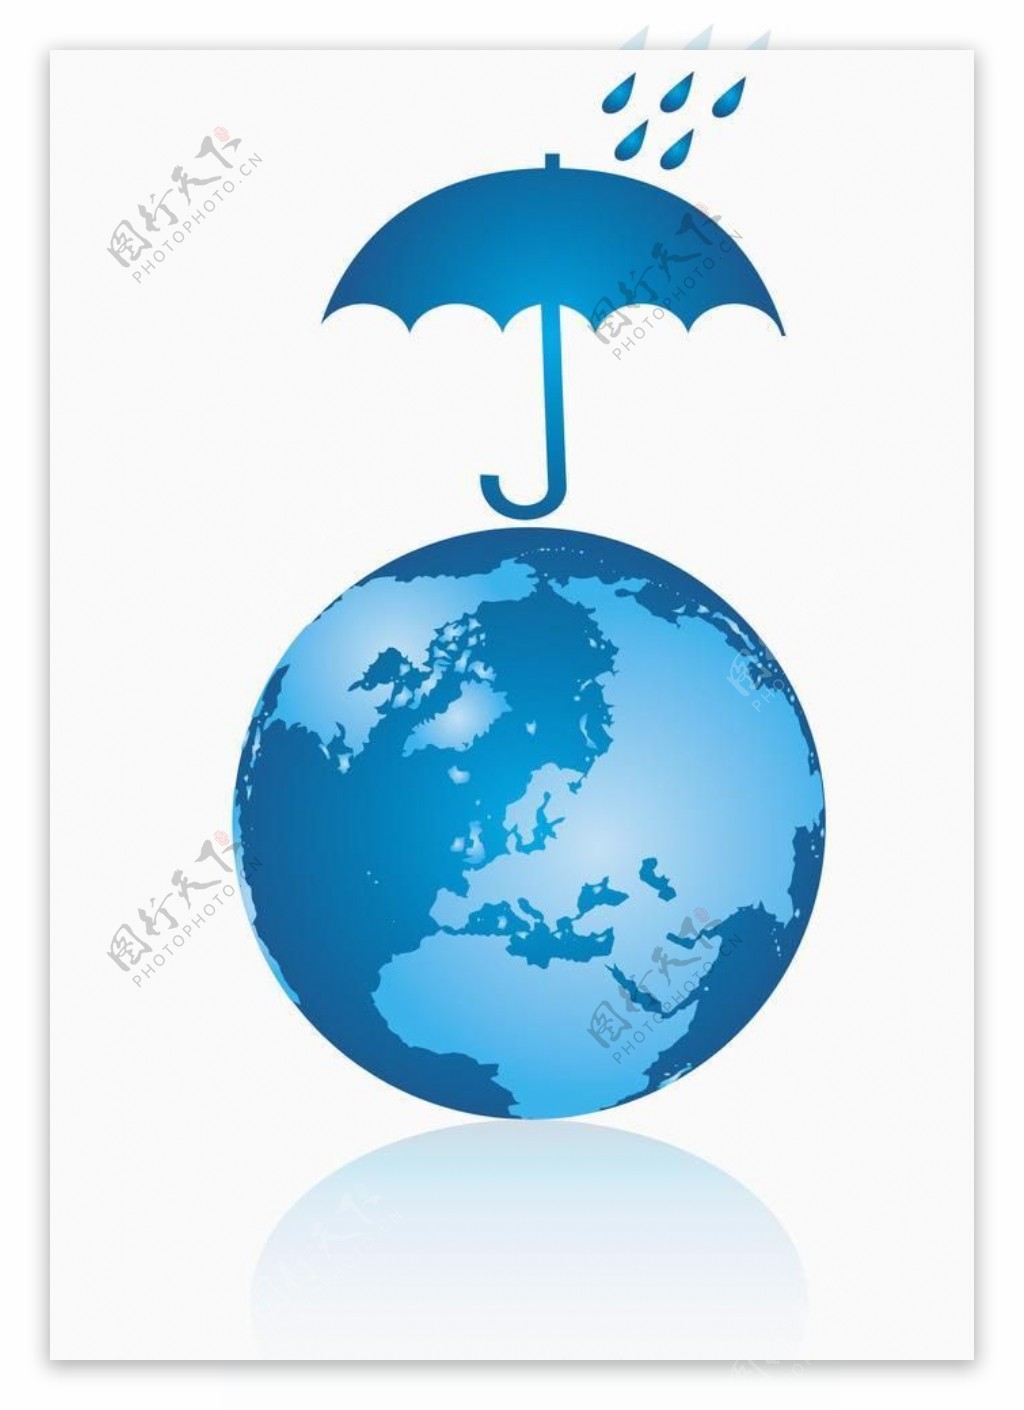 地球雨伞环保背景图片